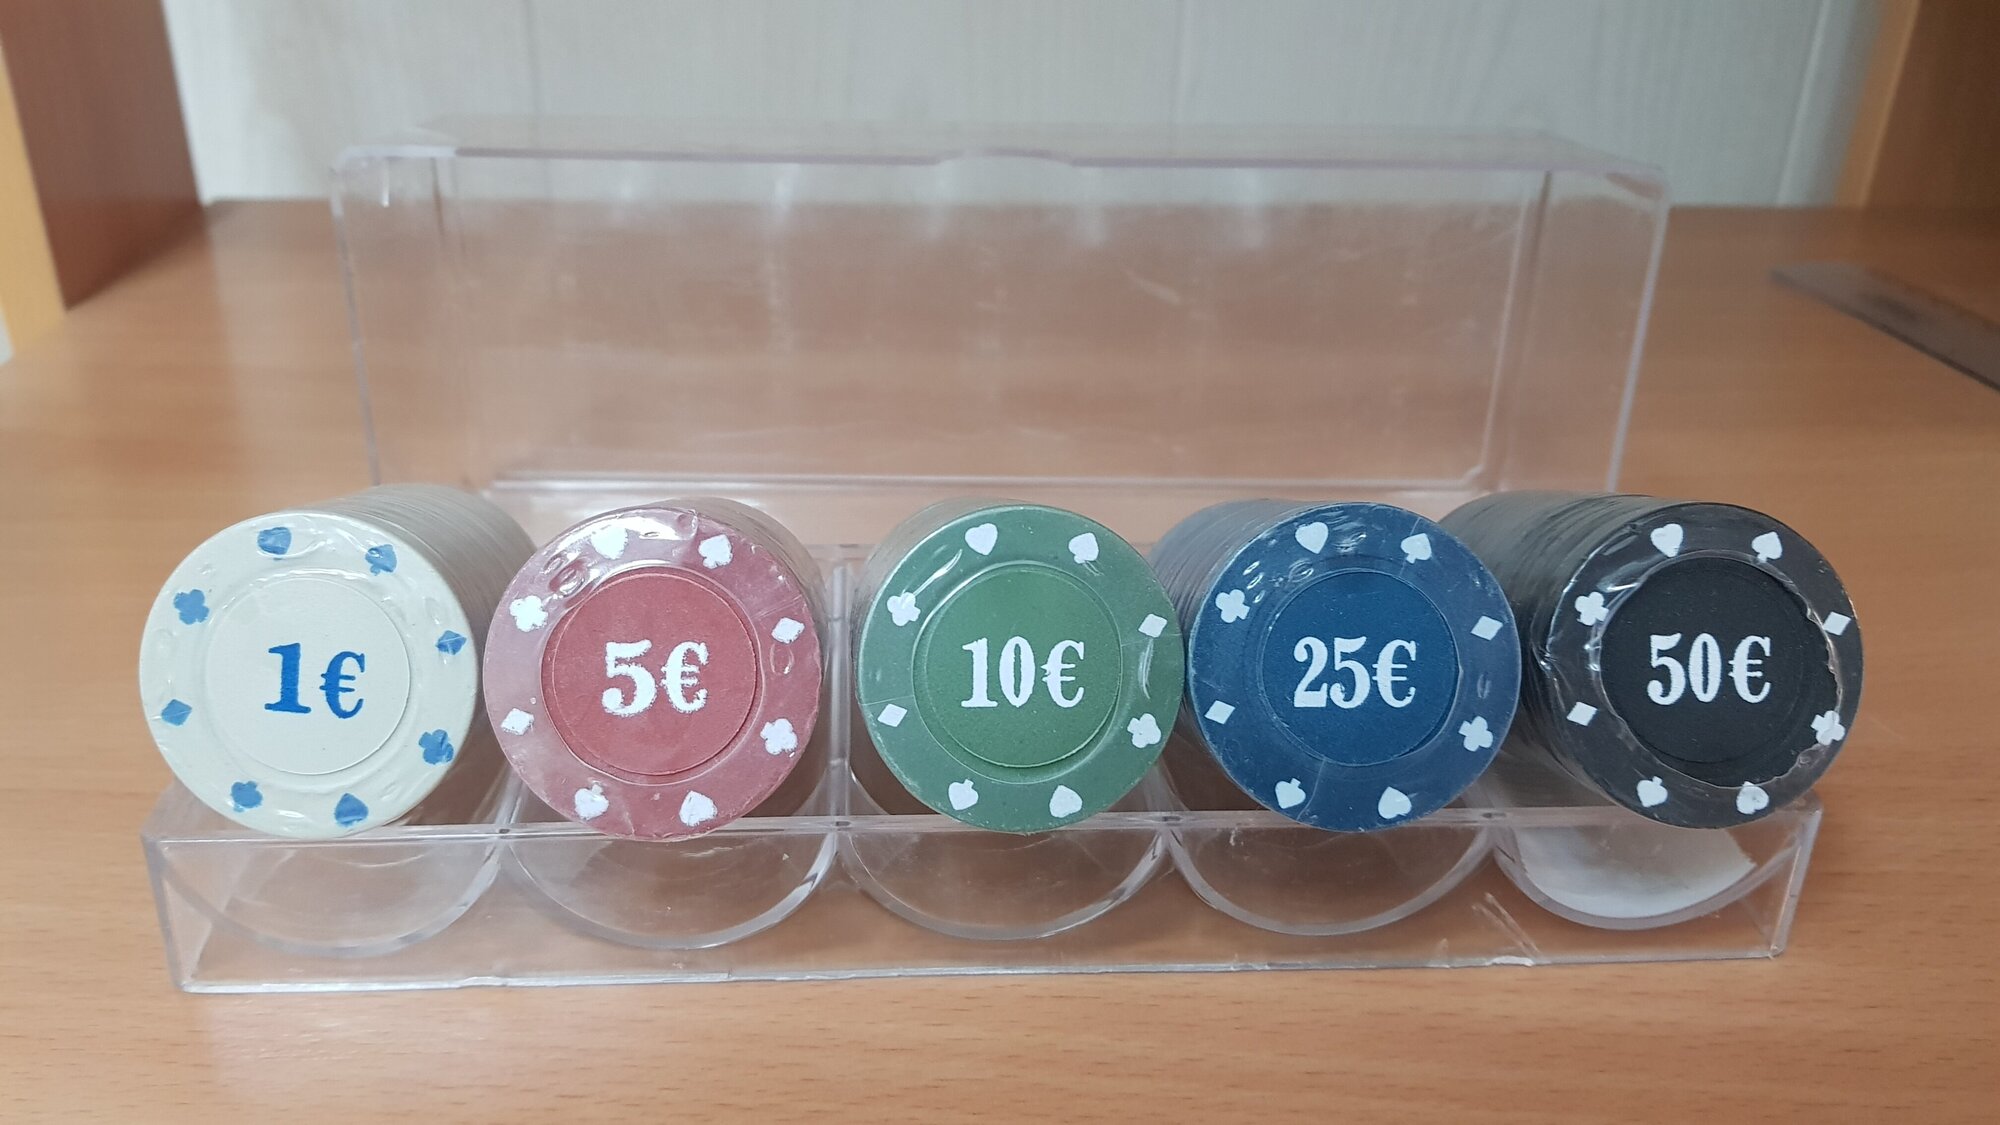 Фишки для покера с номиналом пластиковые, набор 100шт